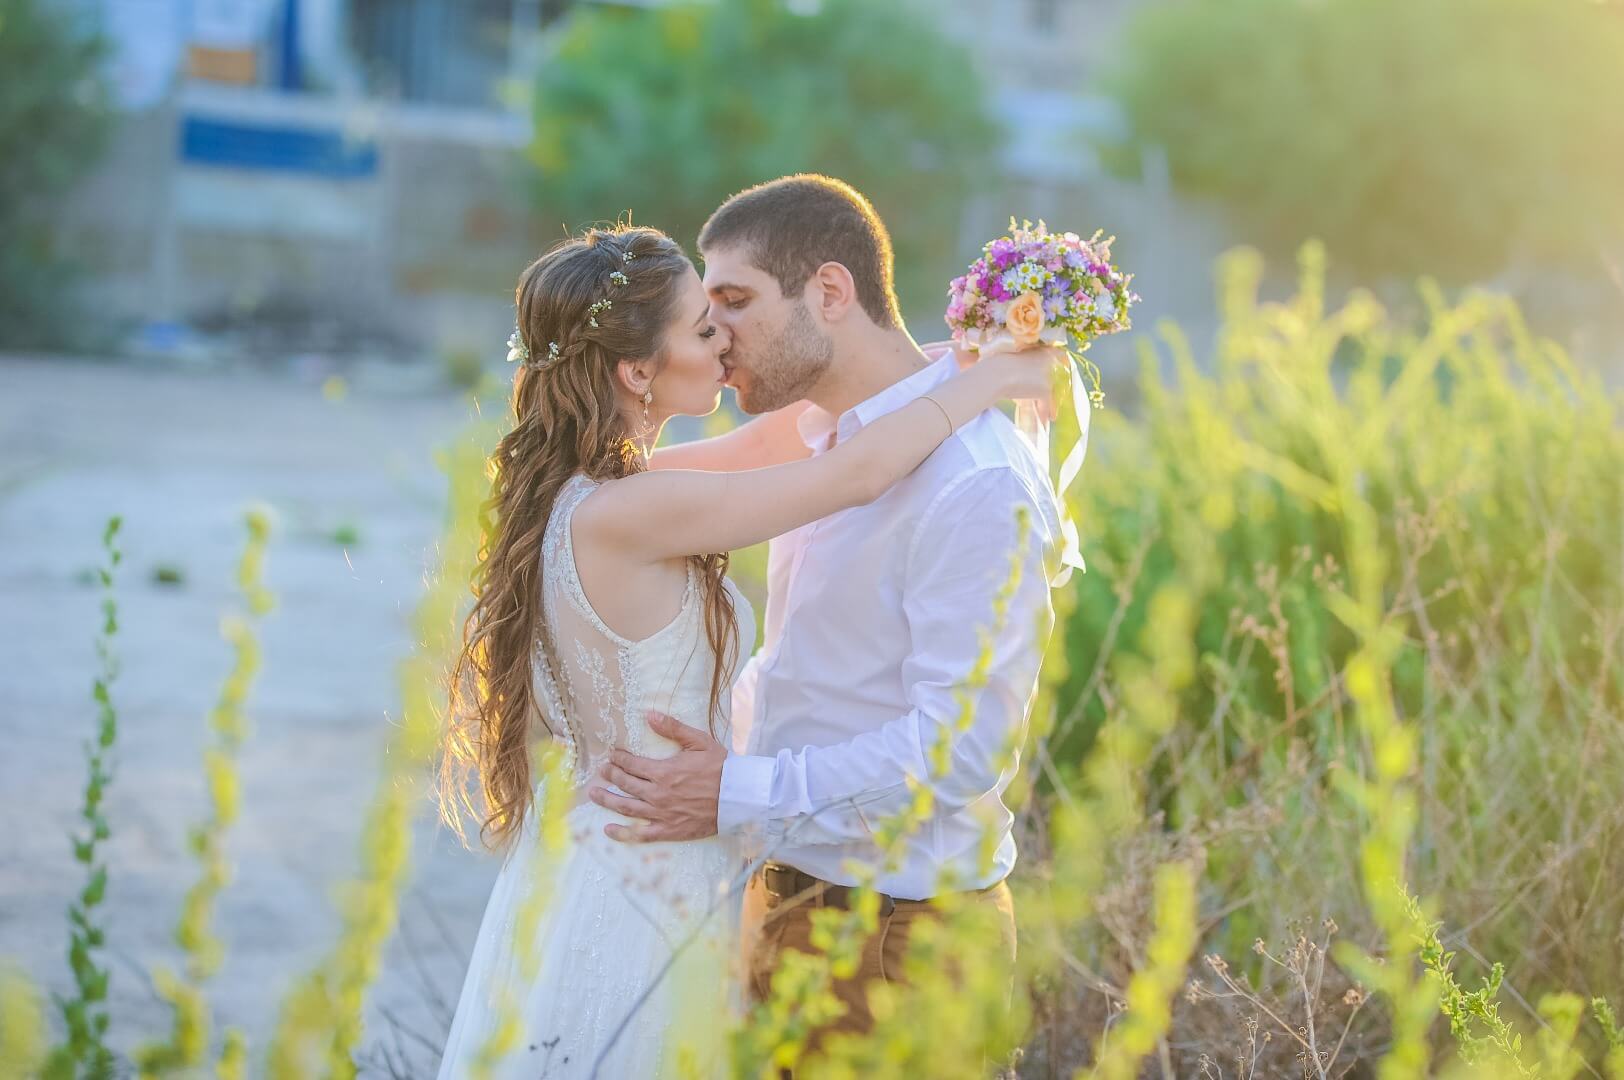 צלם לחתונה בחיפה והקריות-Gal yasenkov | צלמים לחתונה בצפון | גל יאסנקוב